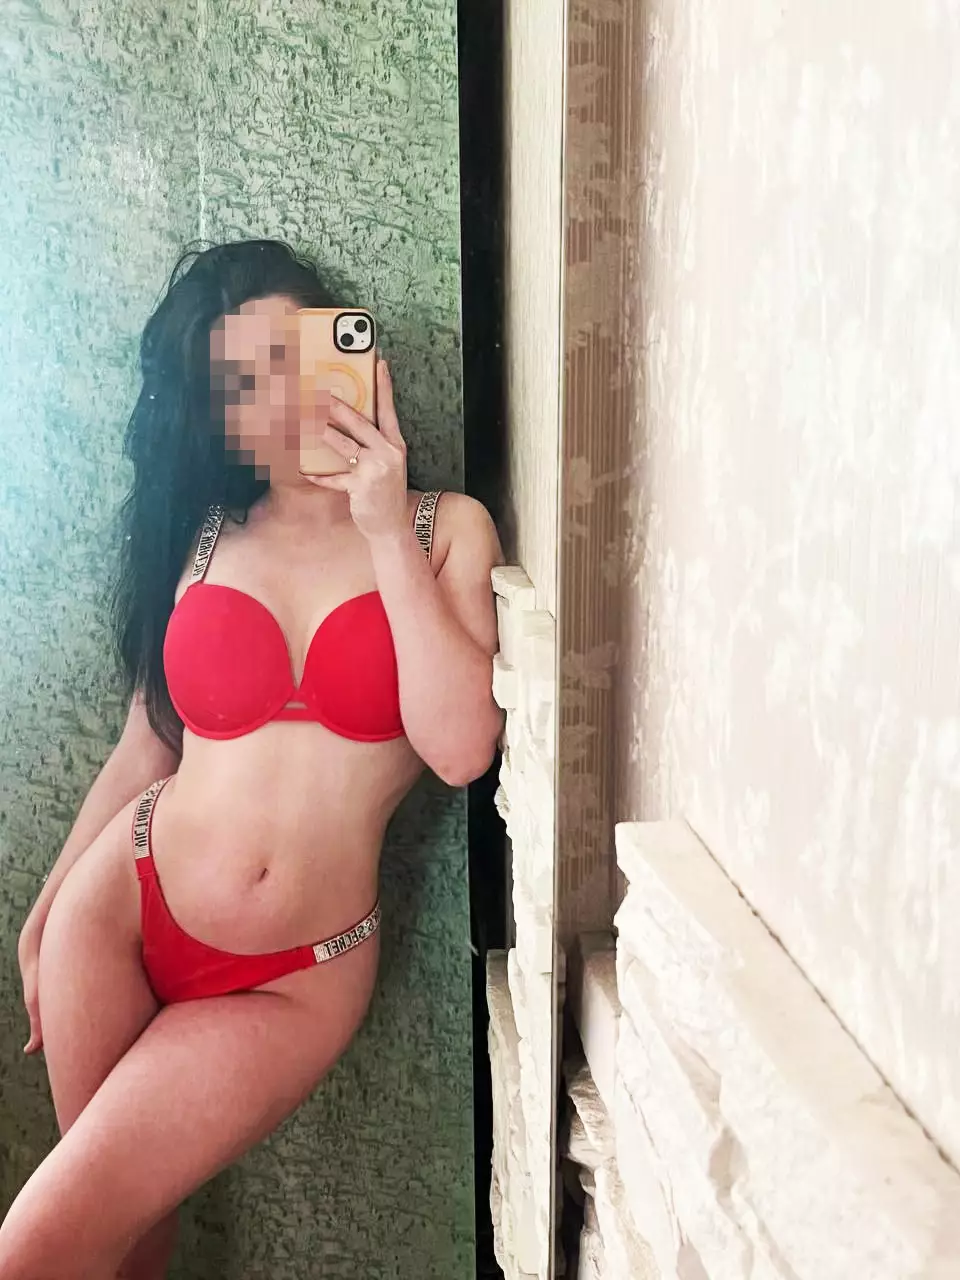 Проститутки Киева: Диана, возраст 18 лет